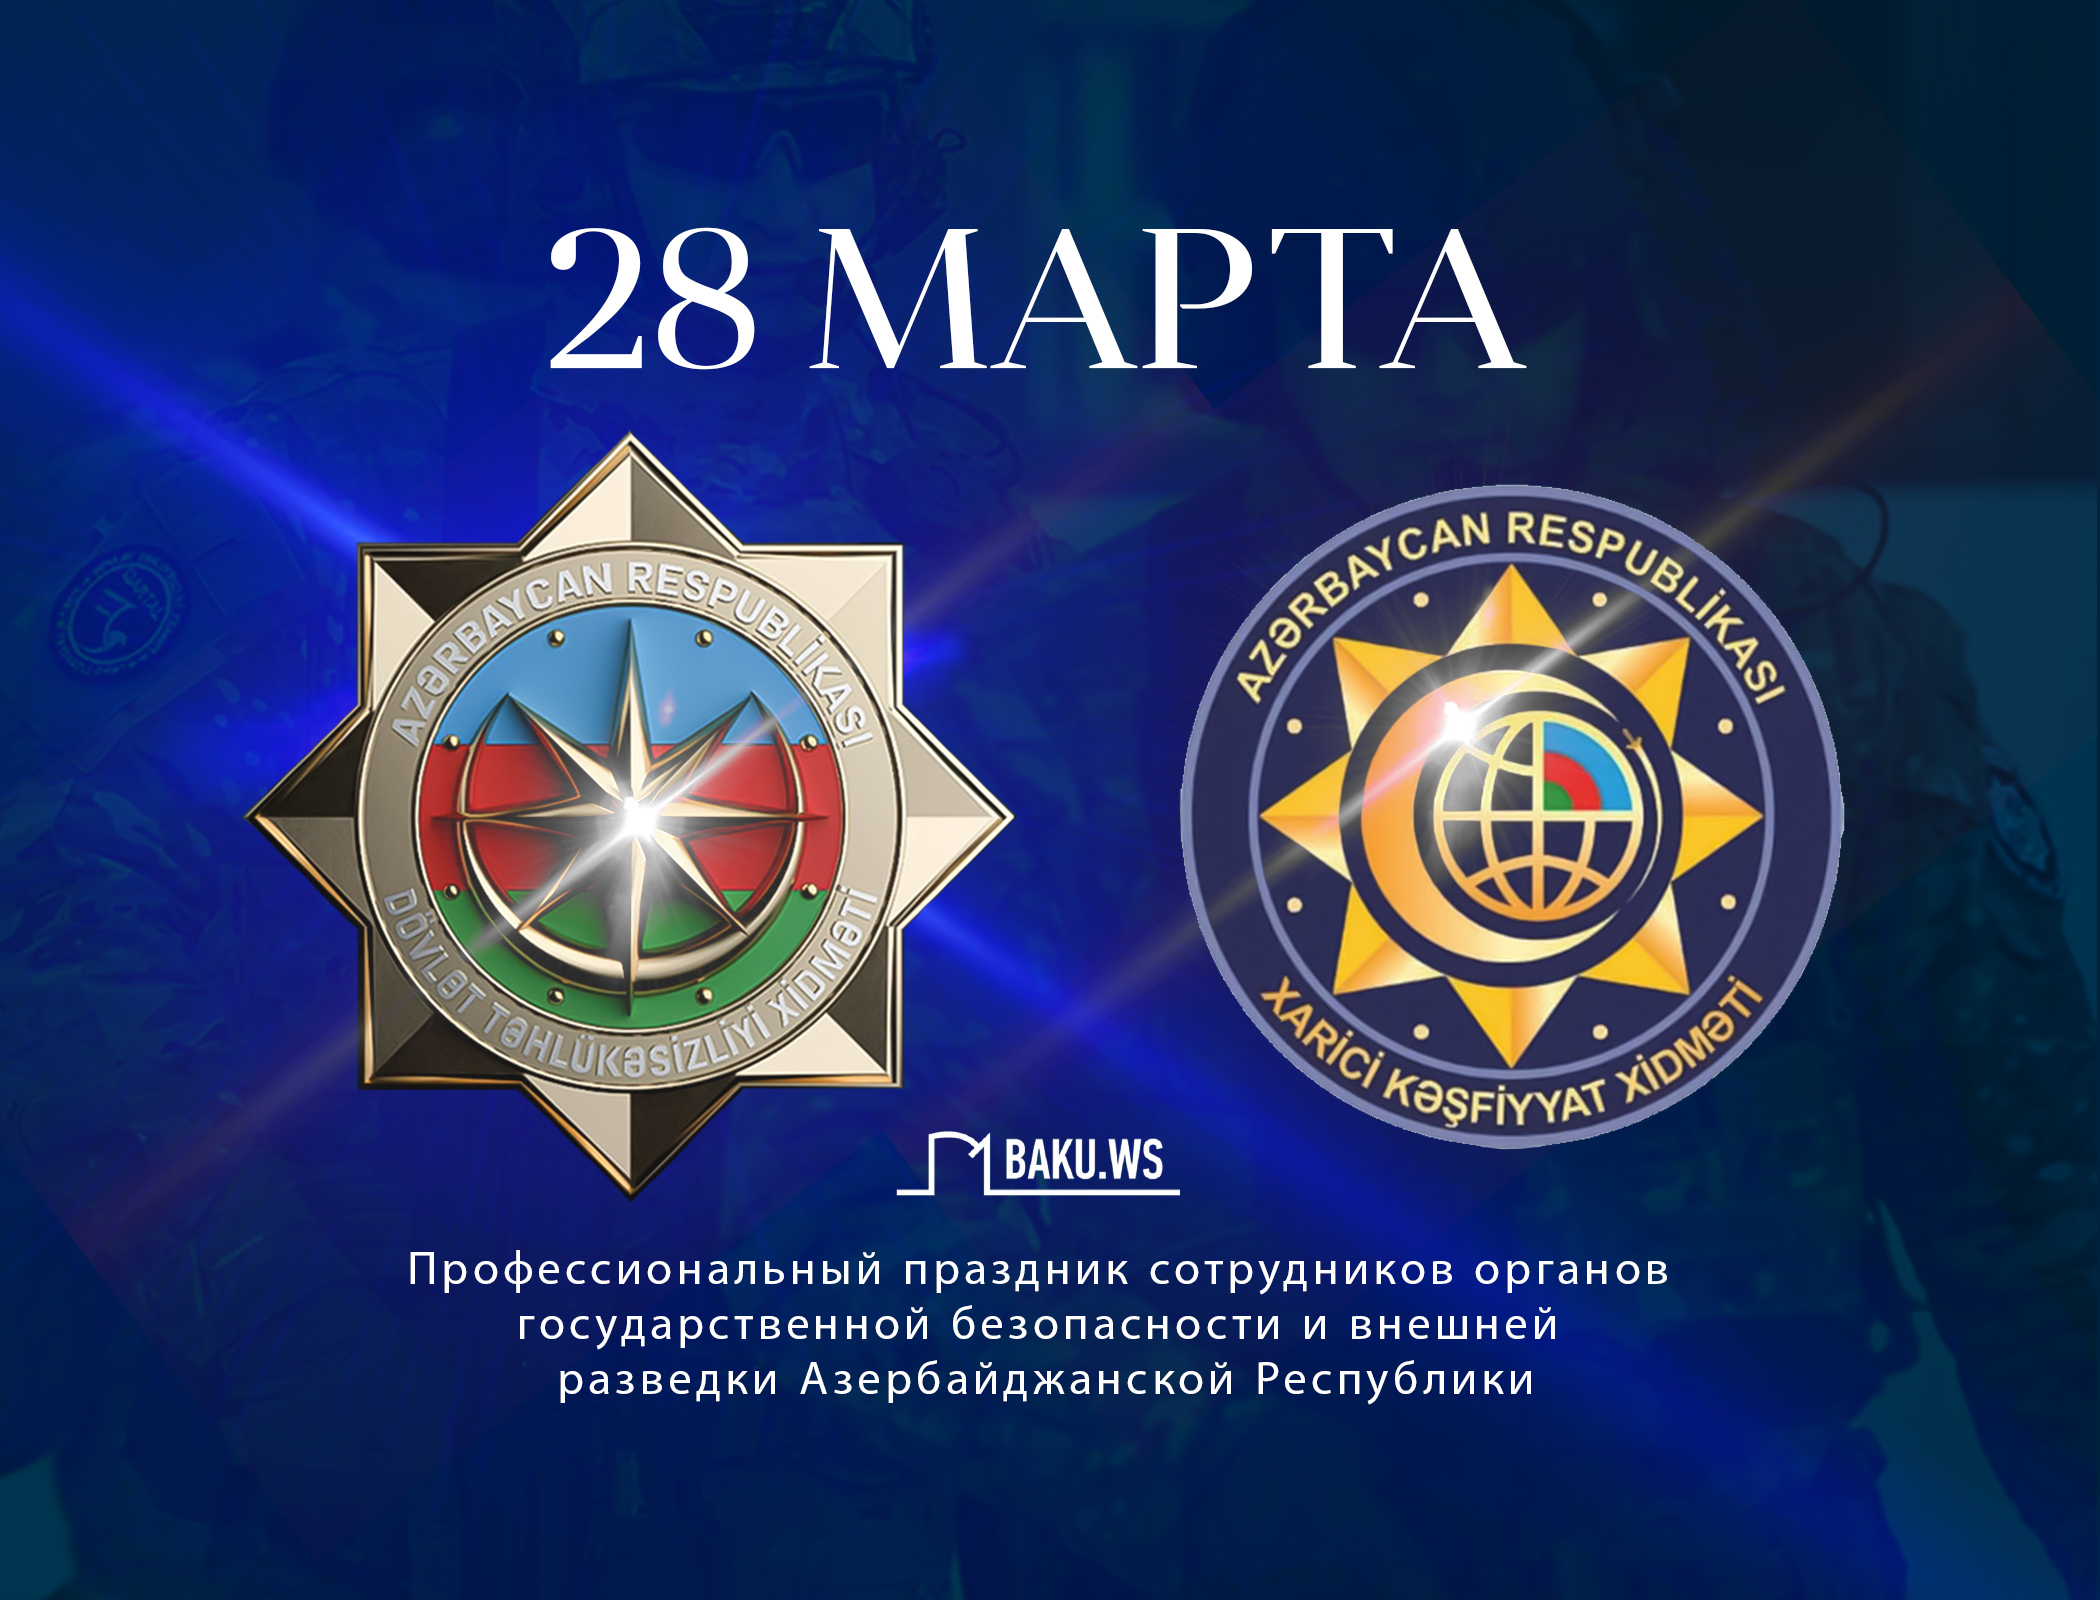 Органам безопасности Азербайджана исполняется 104 года